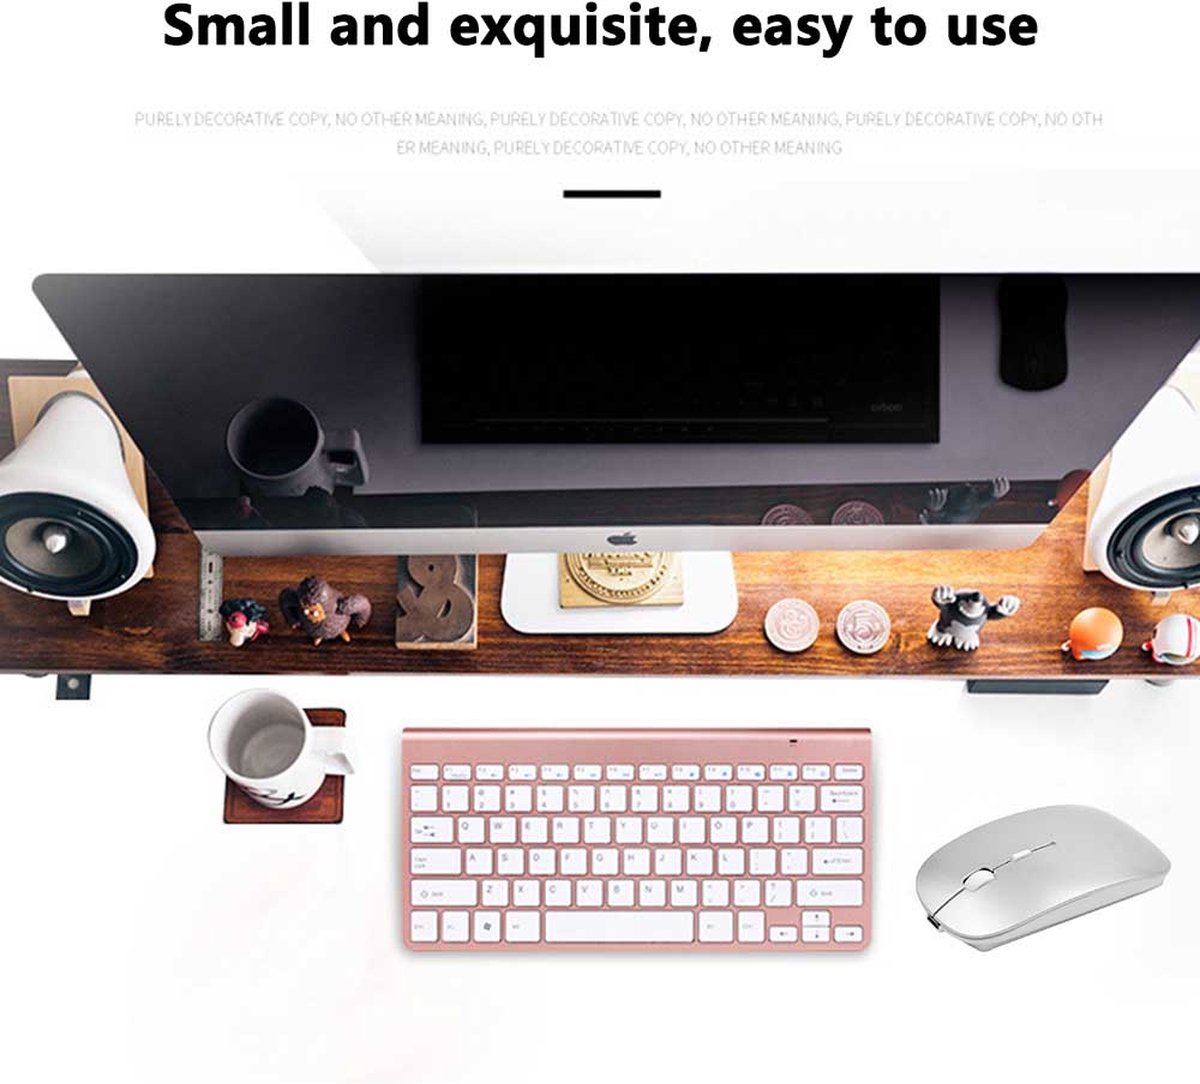 Oplaadbare Bluetooth Draadloze Muis - Draagbare Gaming Mouse Rustige Draadloze Laptop Muis Ergonomische Muis Voor Macbook, Notebook, Laptop, PC, Tablet - Ruimte